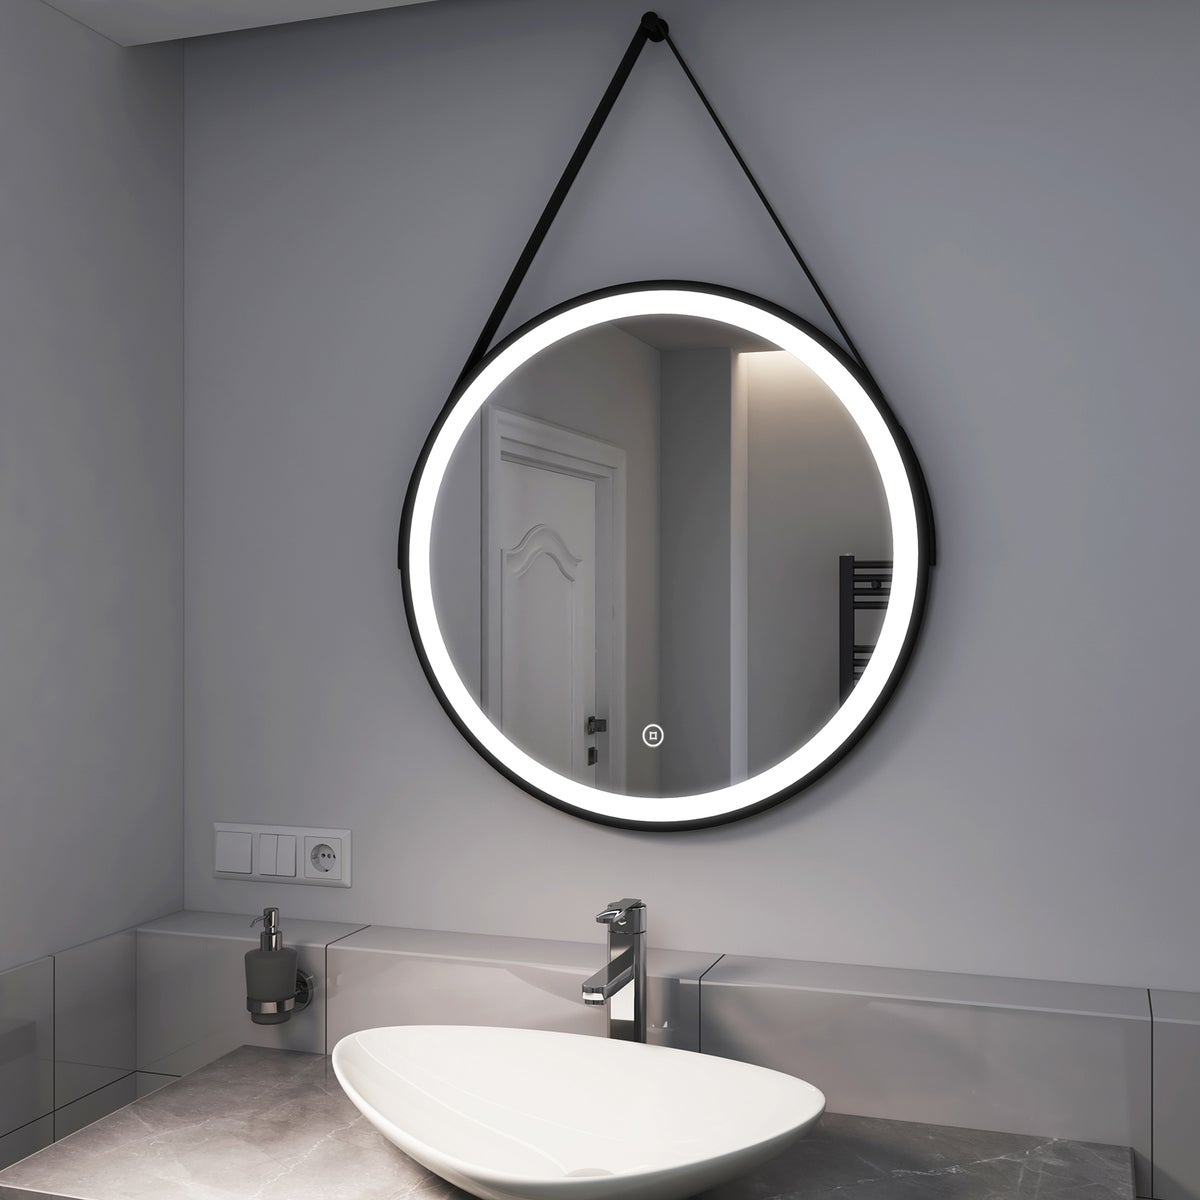 EMKE Badspiegel mit Beleuchtung Schwarz Rahmen und Riemen ф70cm, Kaltweißes Licht,Dimmbar